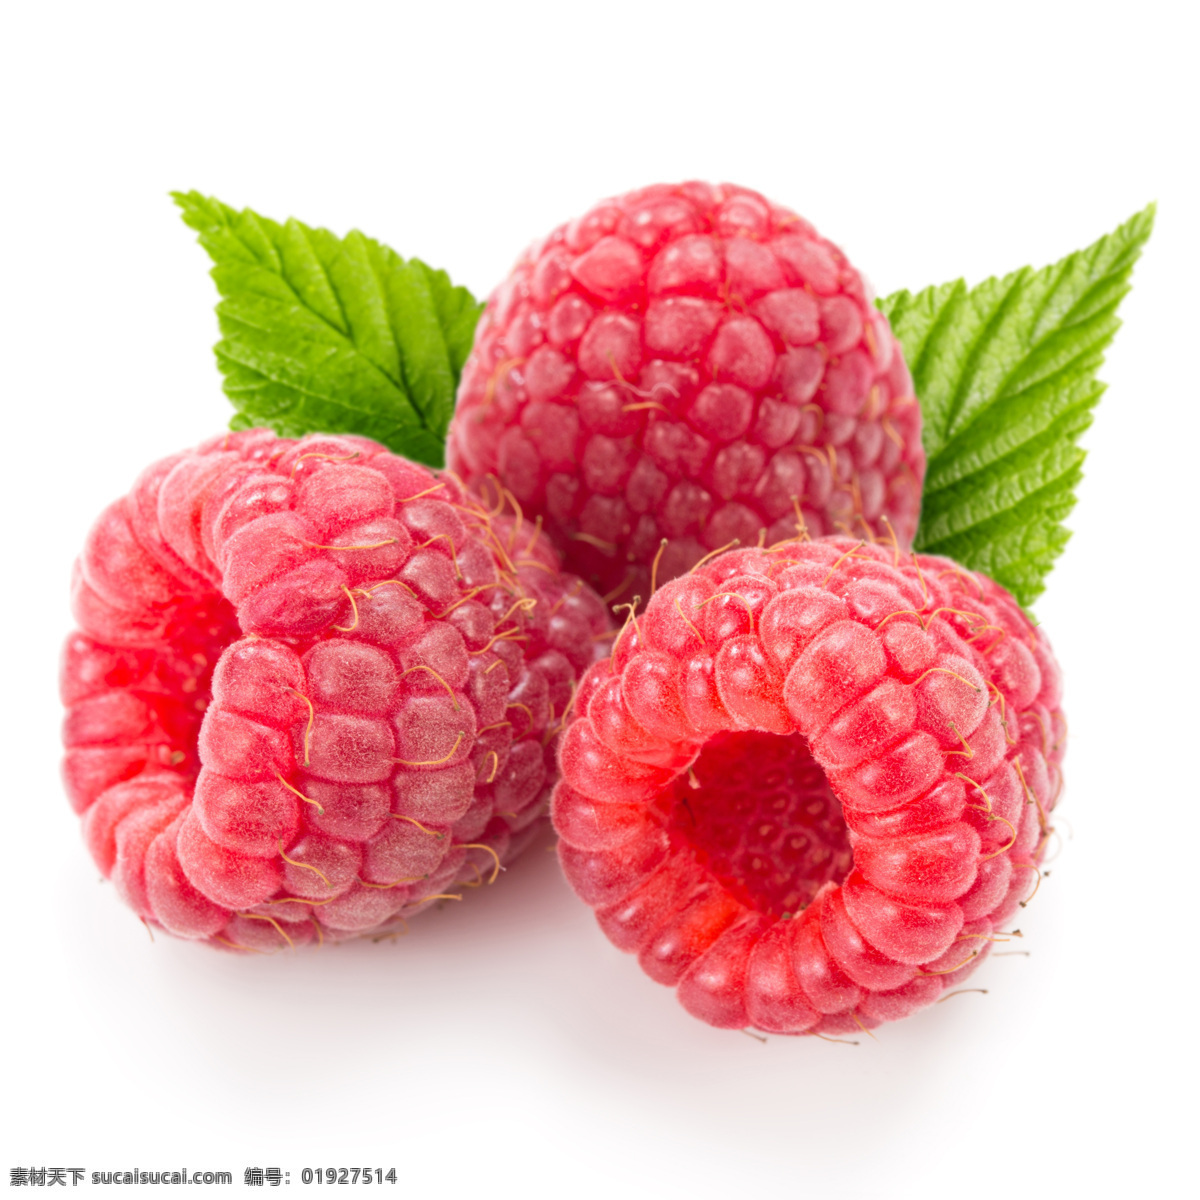 新鲜覆盆子 树莓 覆盆子 新鲜水果 水果摄影 果实 水果蔬菜 餐饮美食 白色